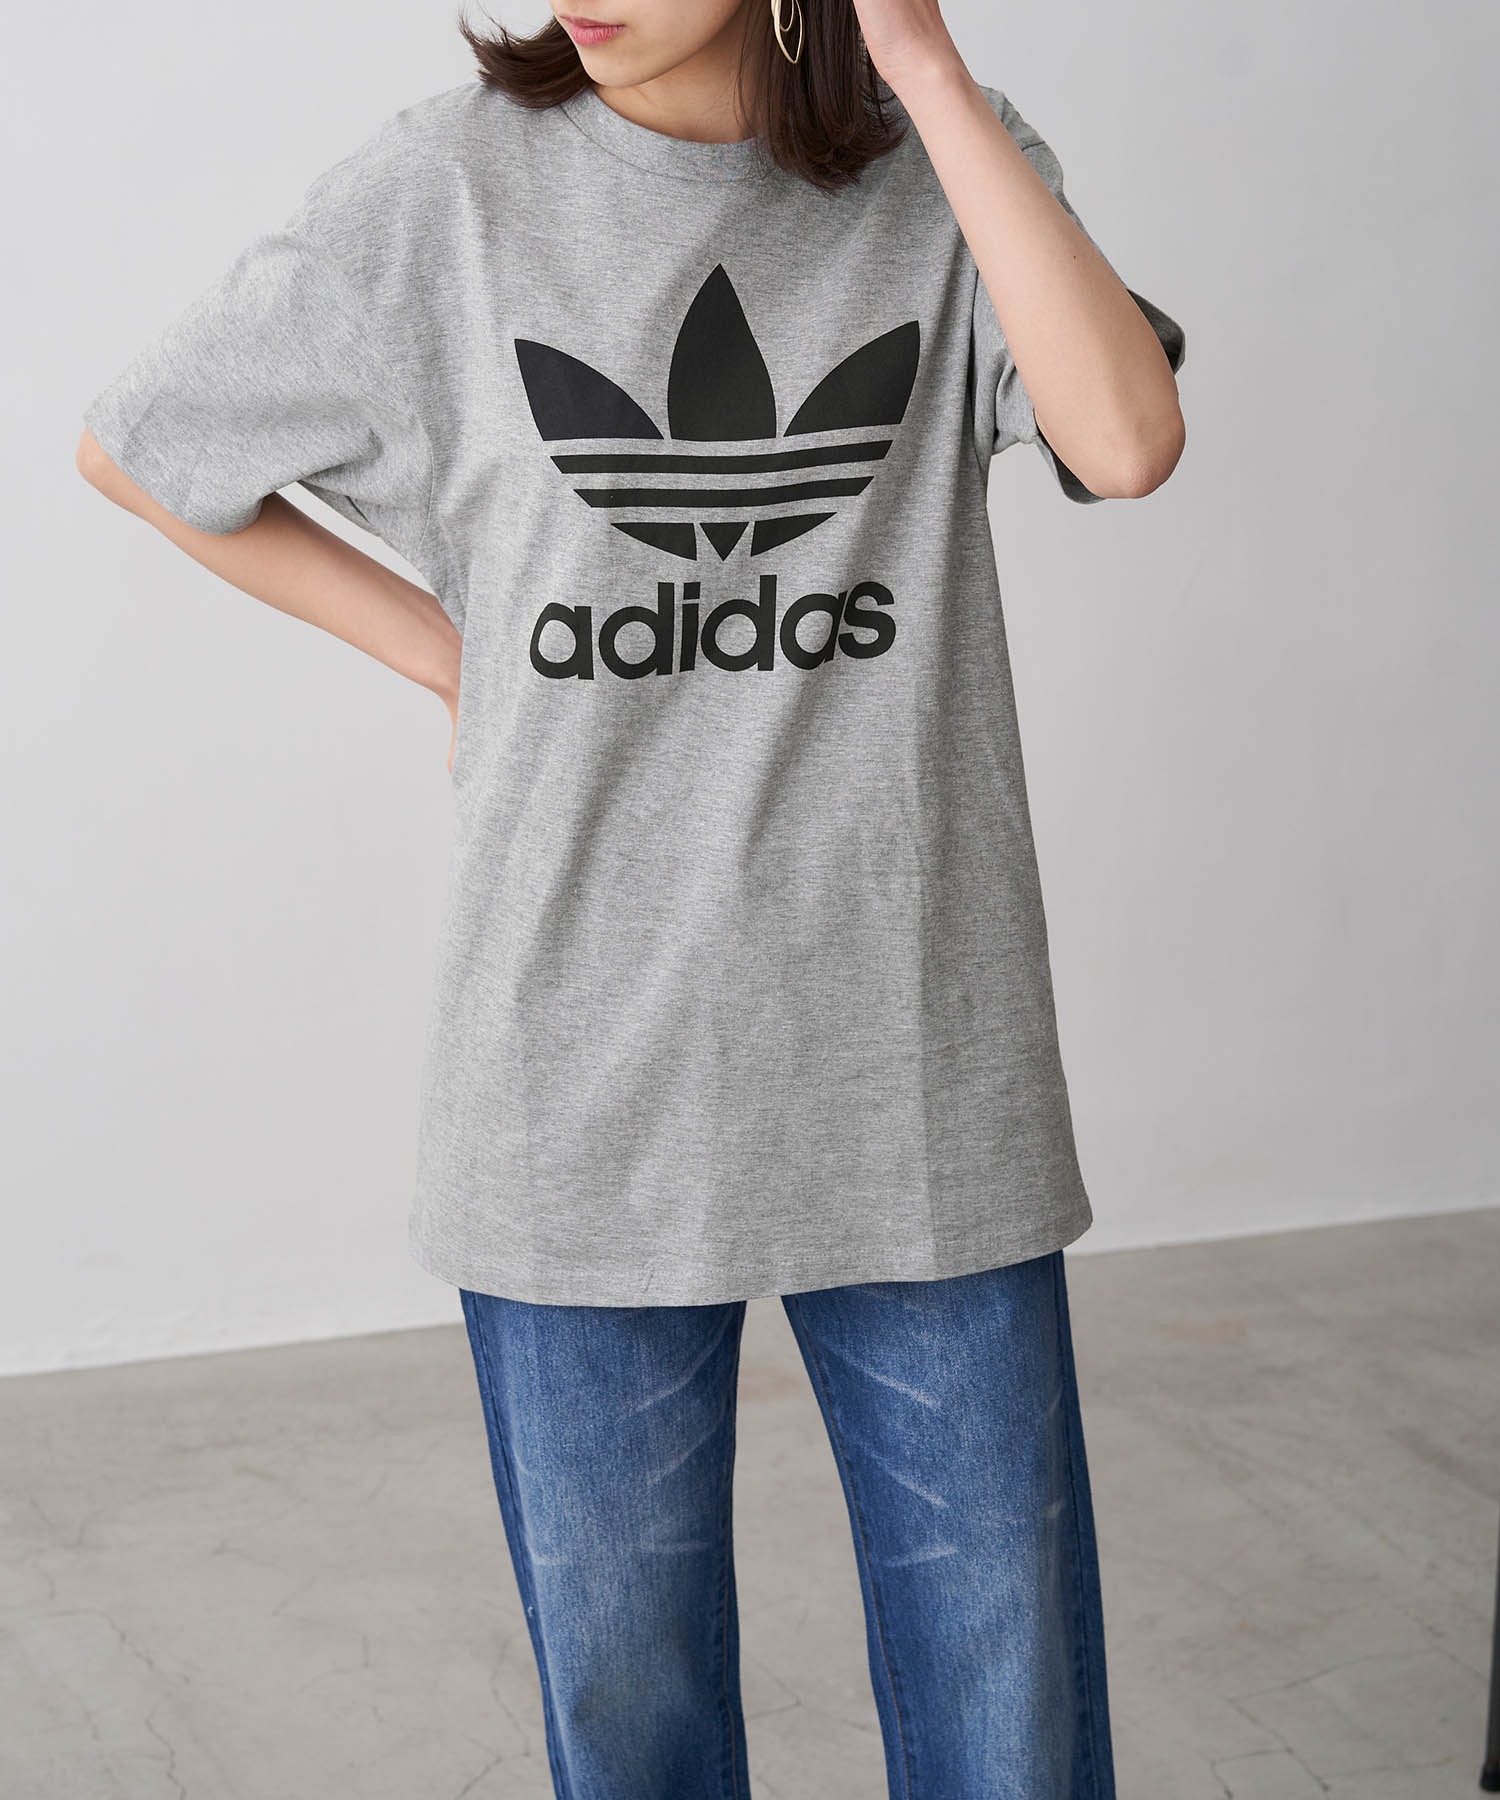 Adidas アディダス トレフォイルロゴプリント オーバーサイズ コットン 半袖 Tシャツ Chaco Closet Chaco Closet チャコクローゼット 公式オンラインストア